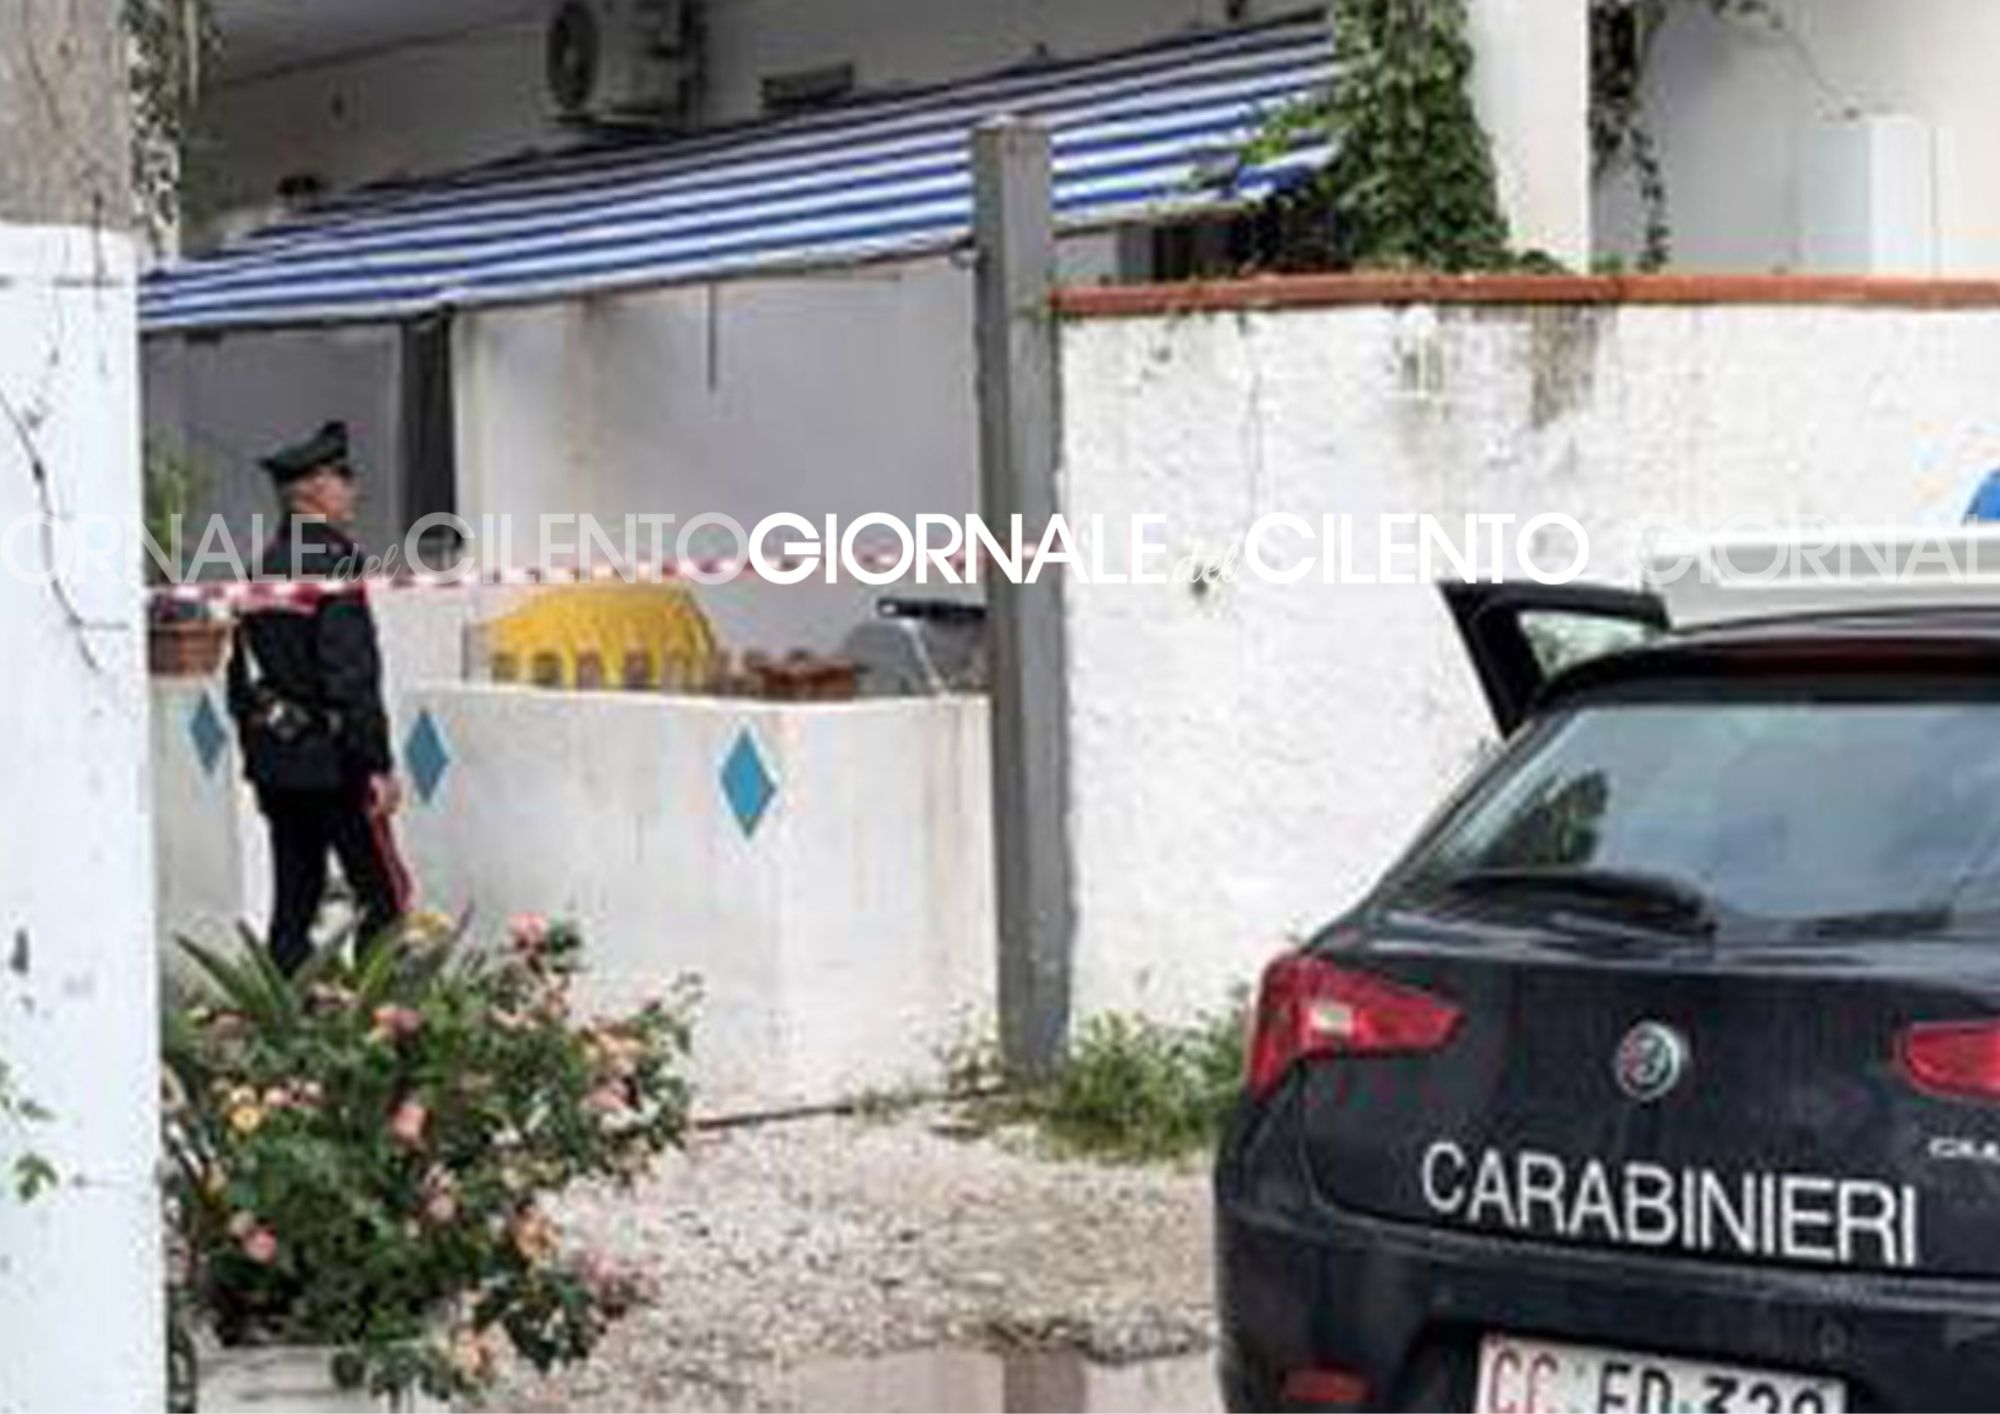 Tragedia in un villaggio turistico di Capaccio Paestum: scoperto cadavere in alloggio